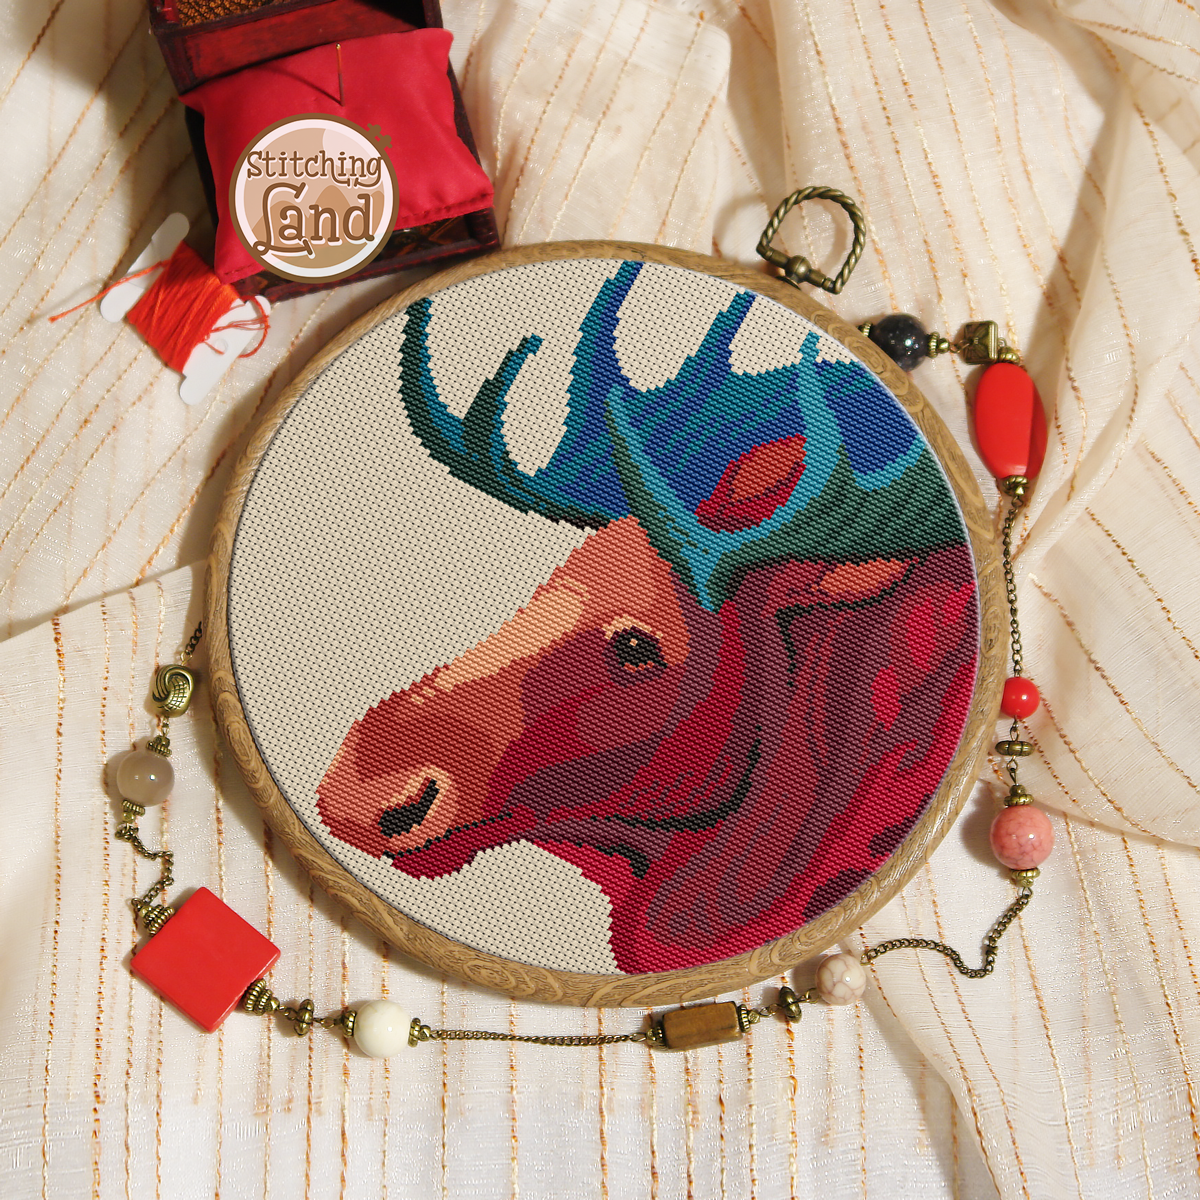 Moose Cross Stitch Pattern